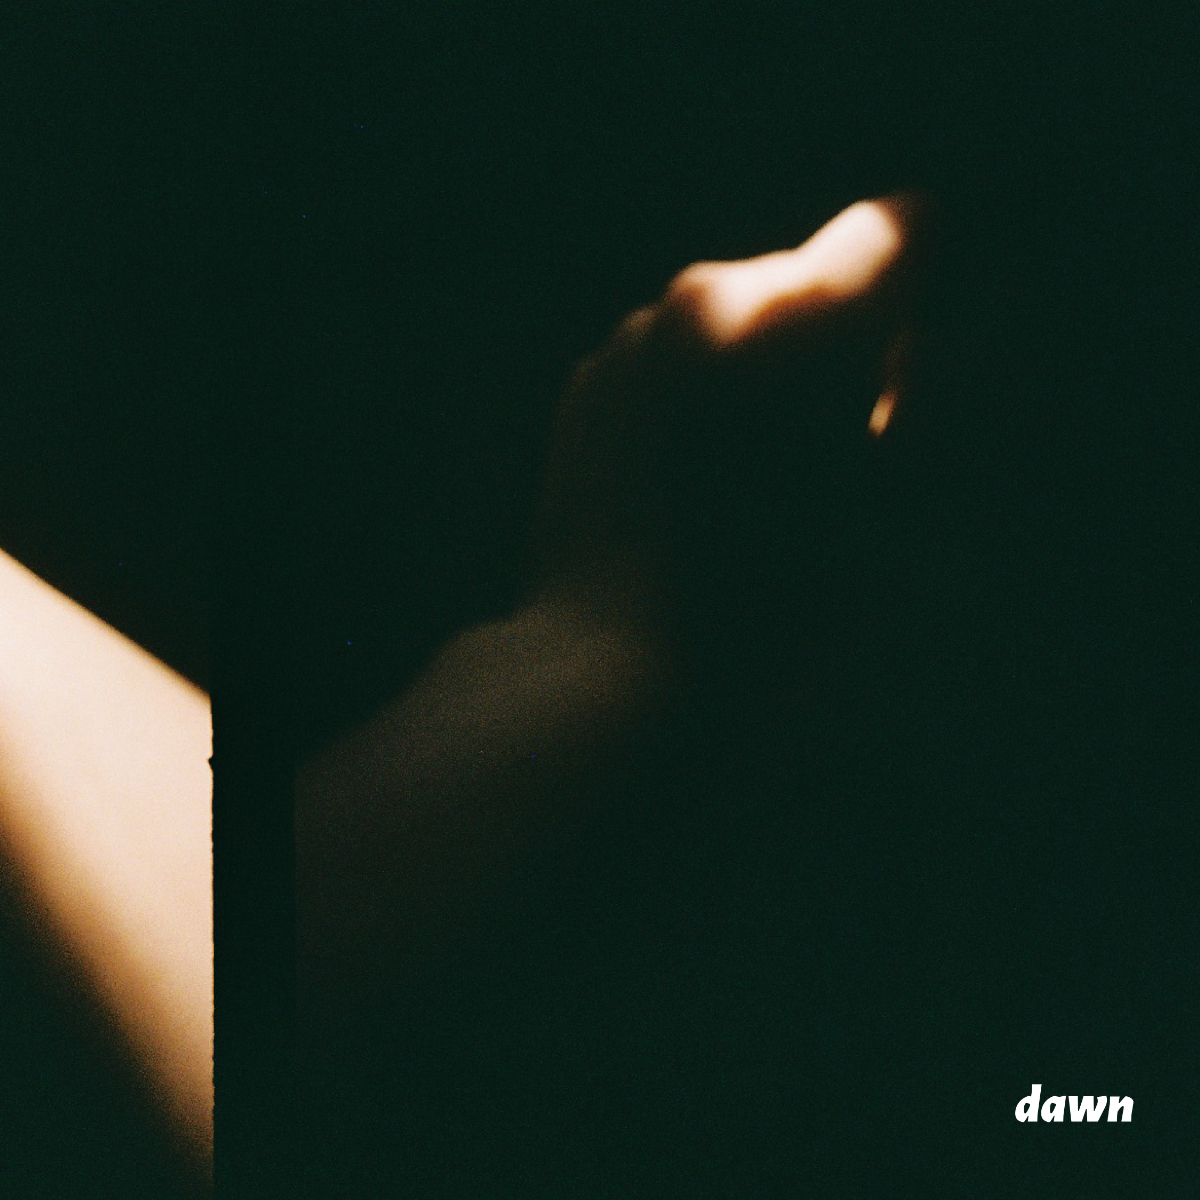 「dawn」ジャケット写真